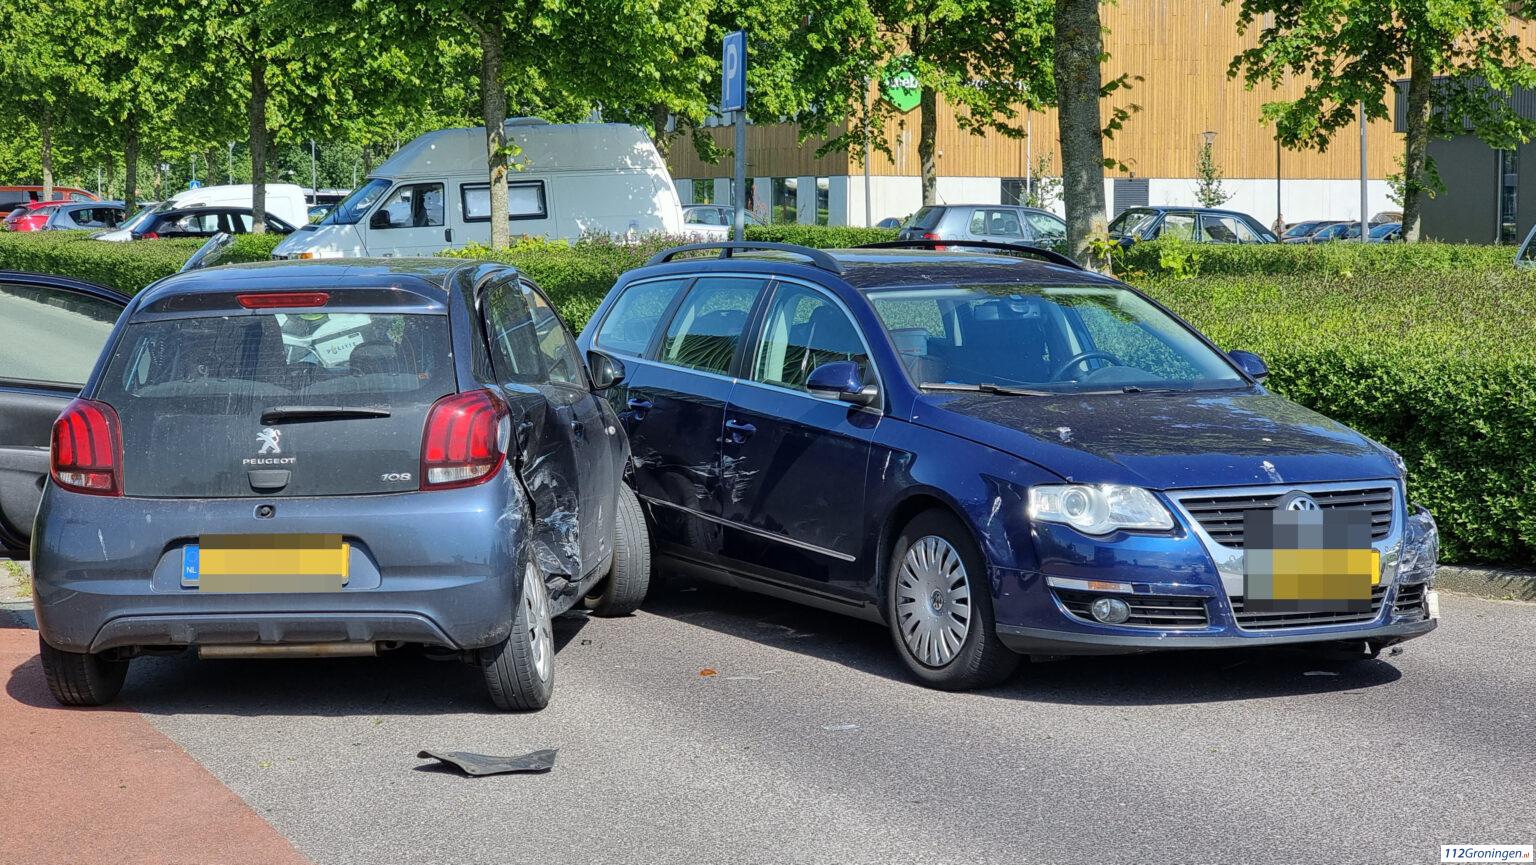 Ongeval op het Zernikeplein Groningen, 1 lichtgewonde.